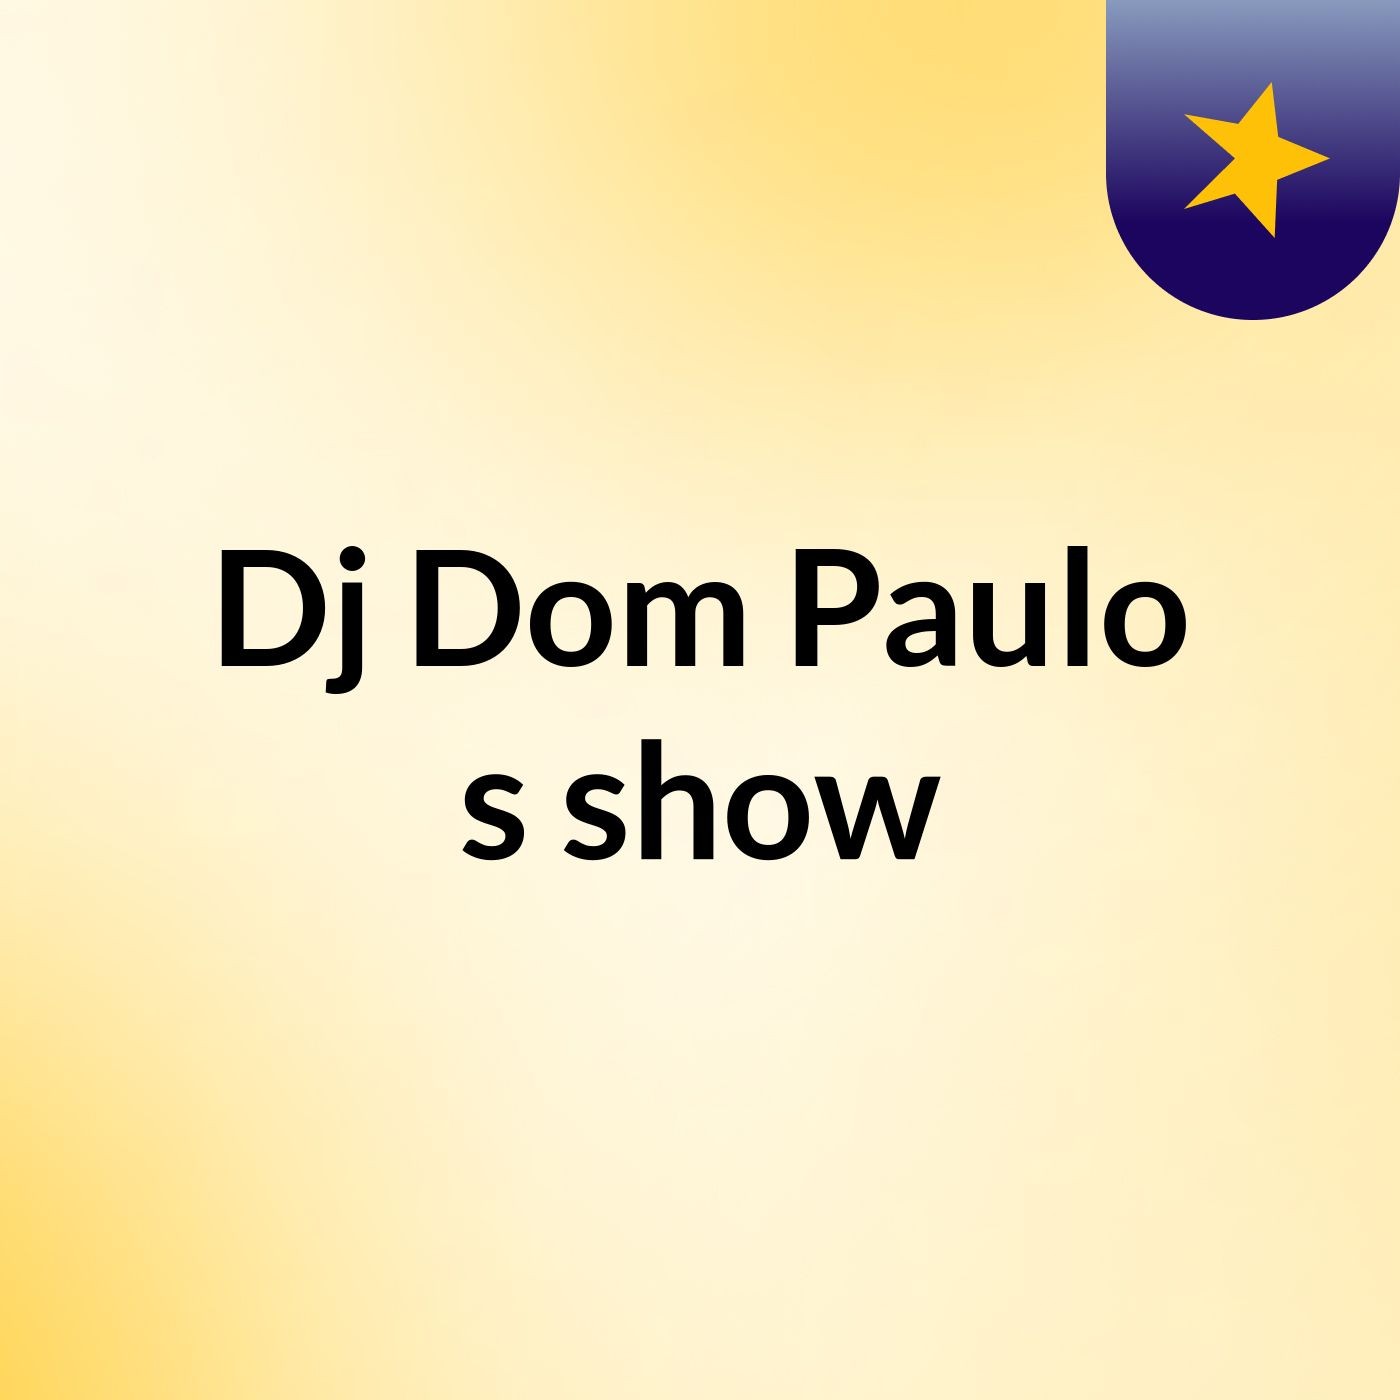 Dj Dom Paulo's show